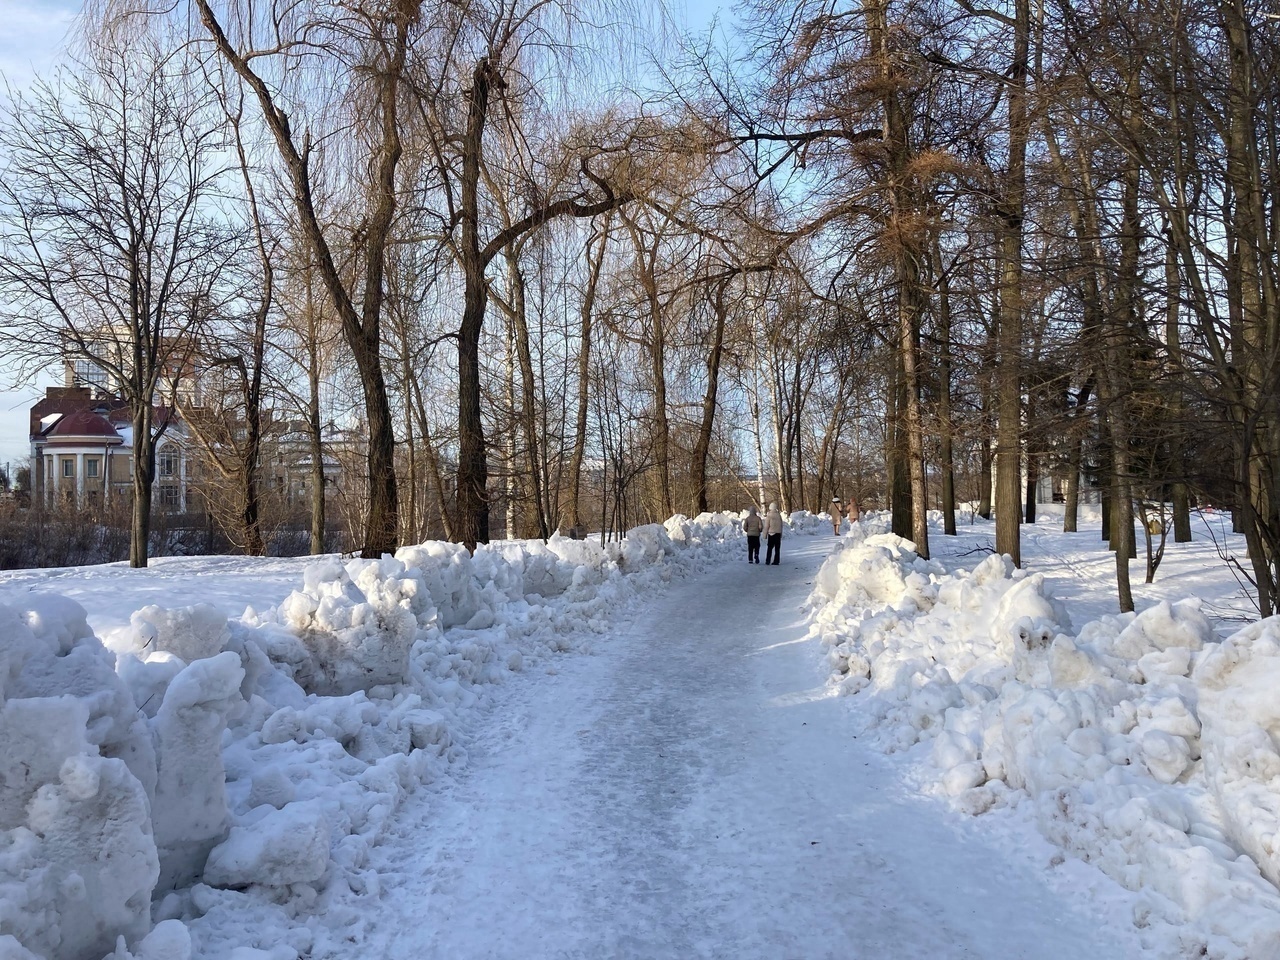 "Март - зимний месяц, тепла не ждите": удручающий прогноз на начало весны от Романа Вильфанда